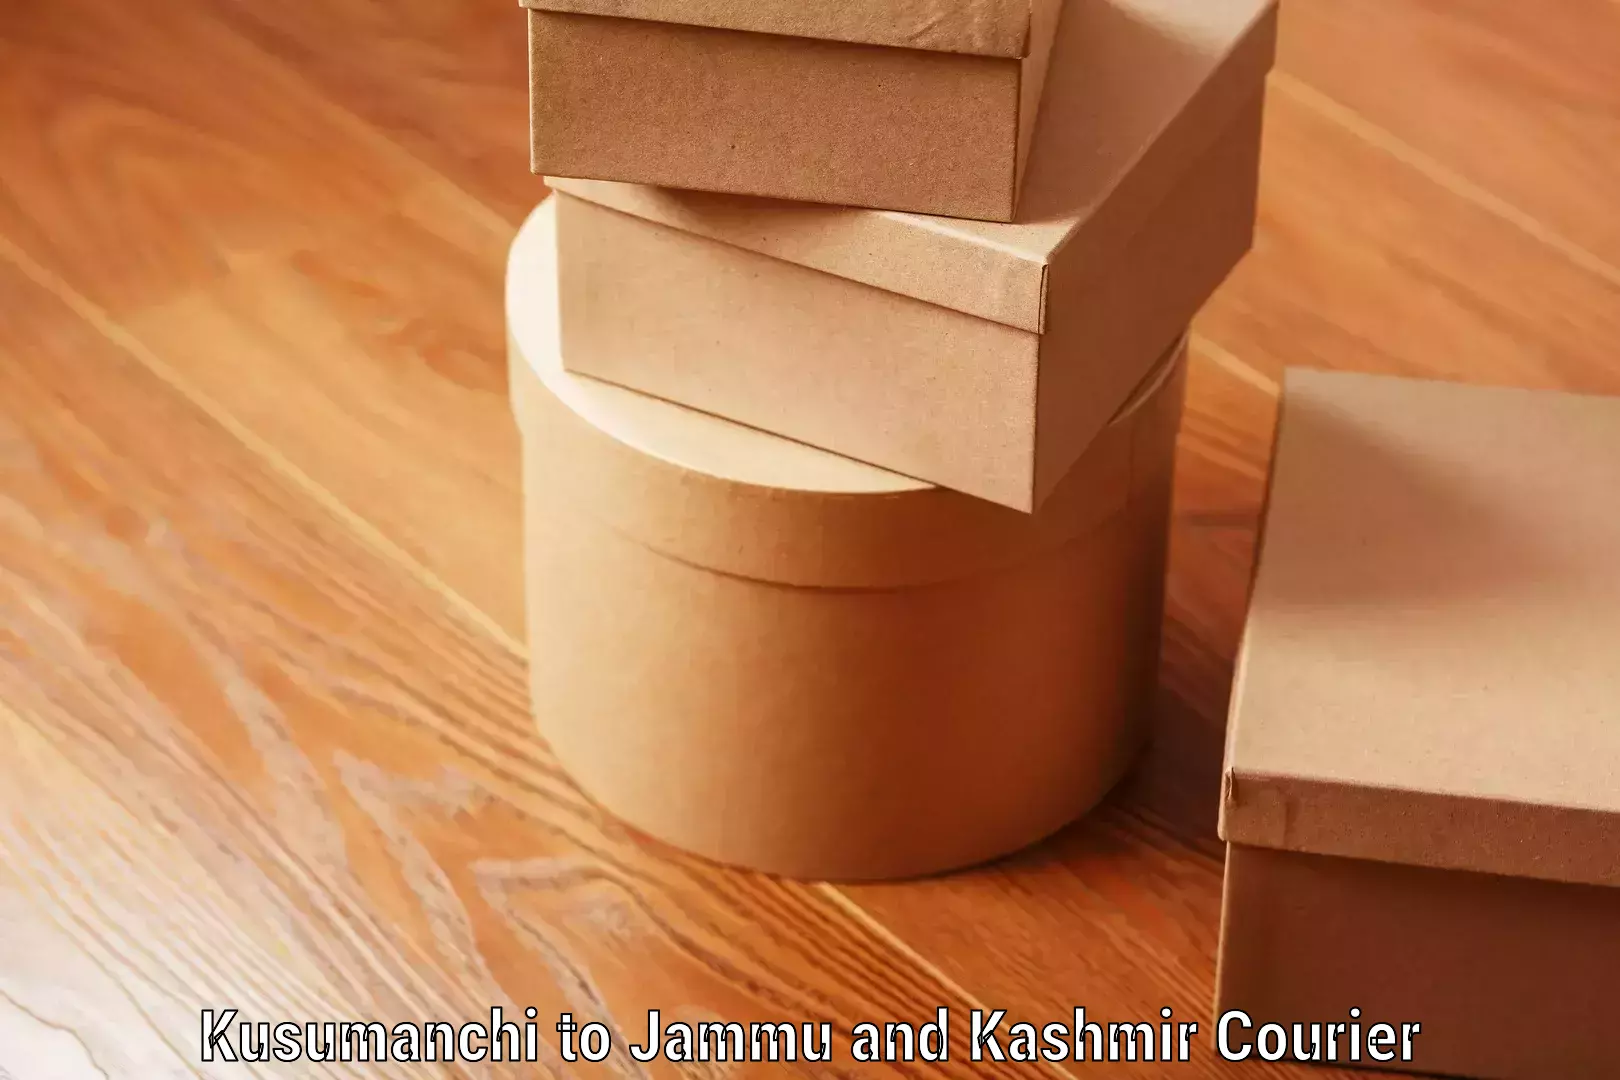 Luggage forwarding service Kusumanchi to Jammu